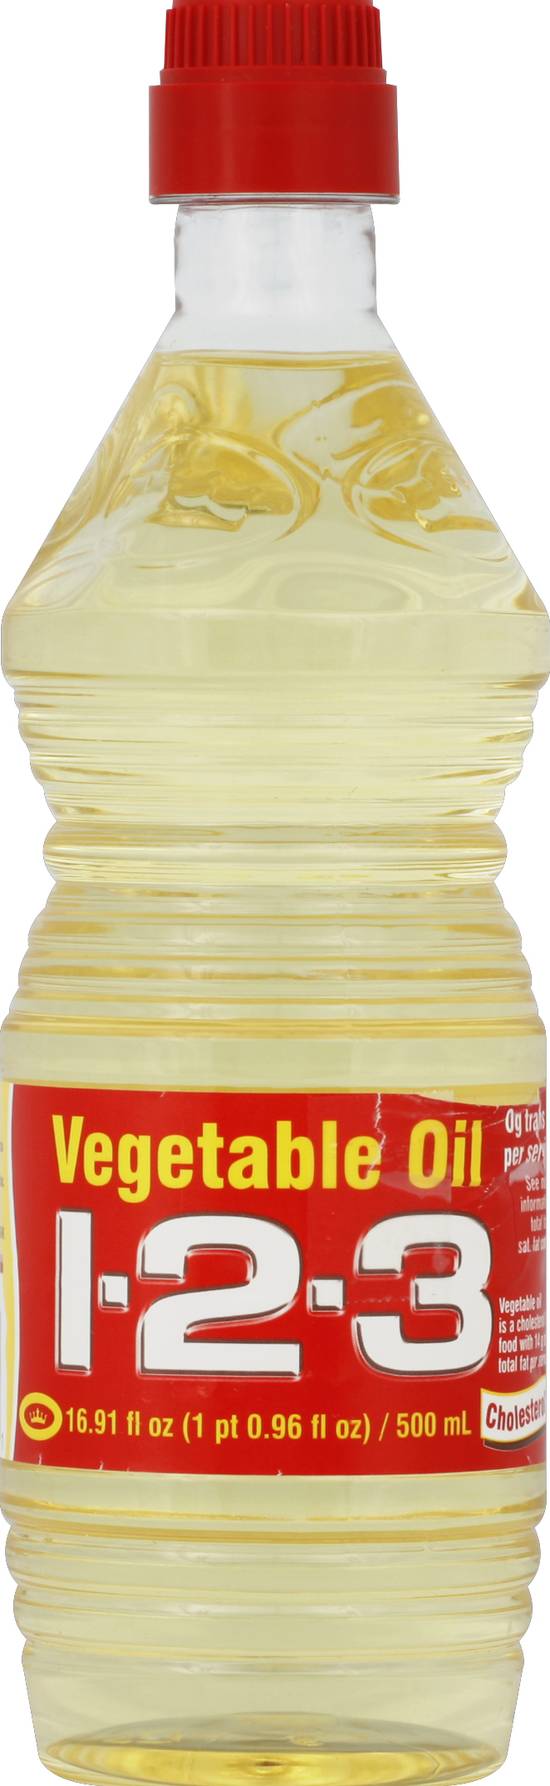 1-2-3 Vegetable Oil